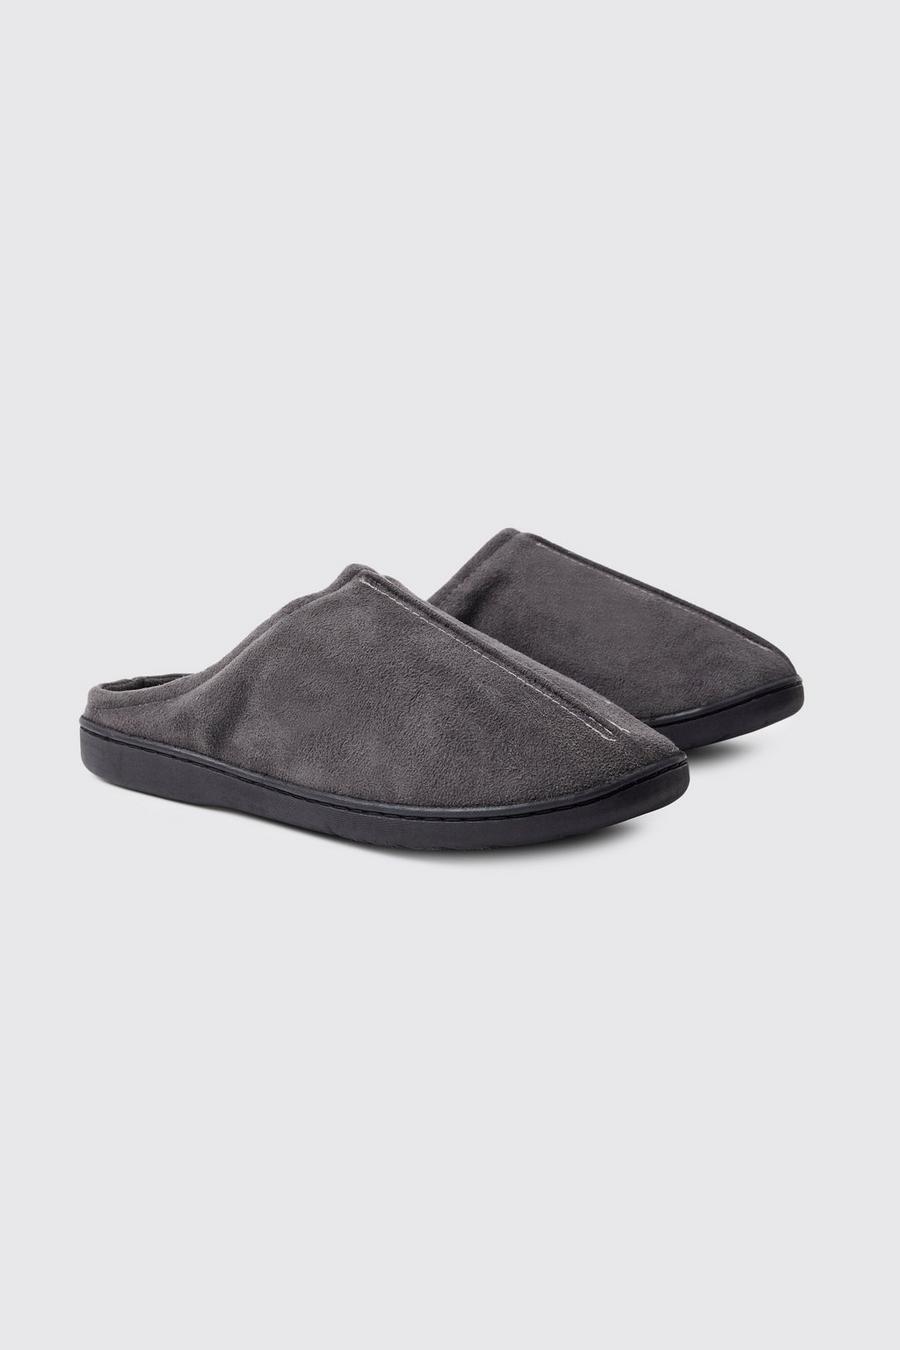 Zapatillas mule de ante sintético, Dark grey